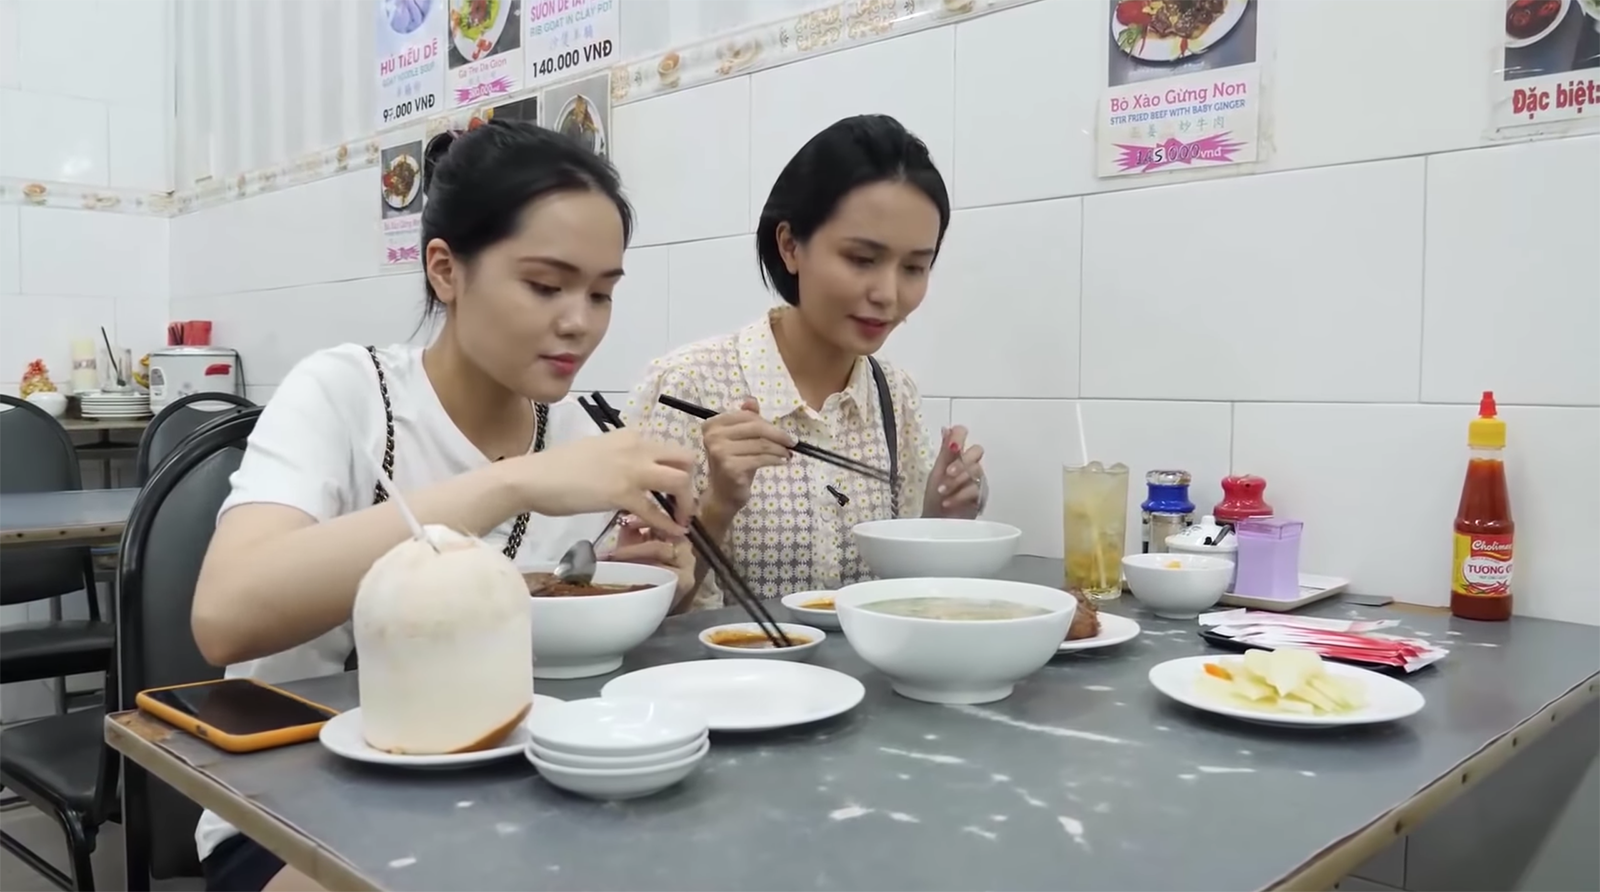 Sau clip đập hộp hàng hiệu, công chúa béo Quỳnh Anh - vợ Duy Mạnh bất ngờ chuyển hướng làm clip review ăn hàng - Ảnh 6.